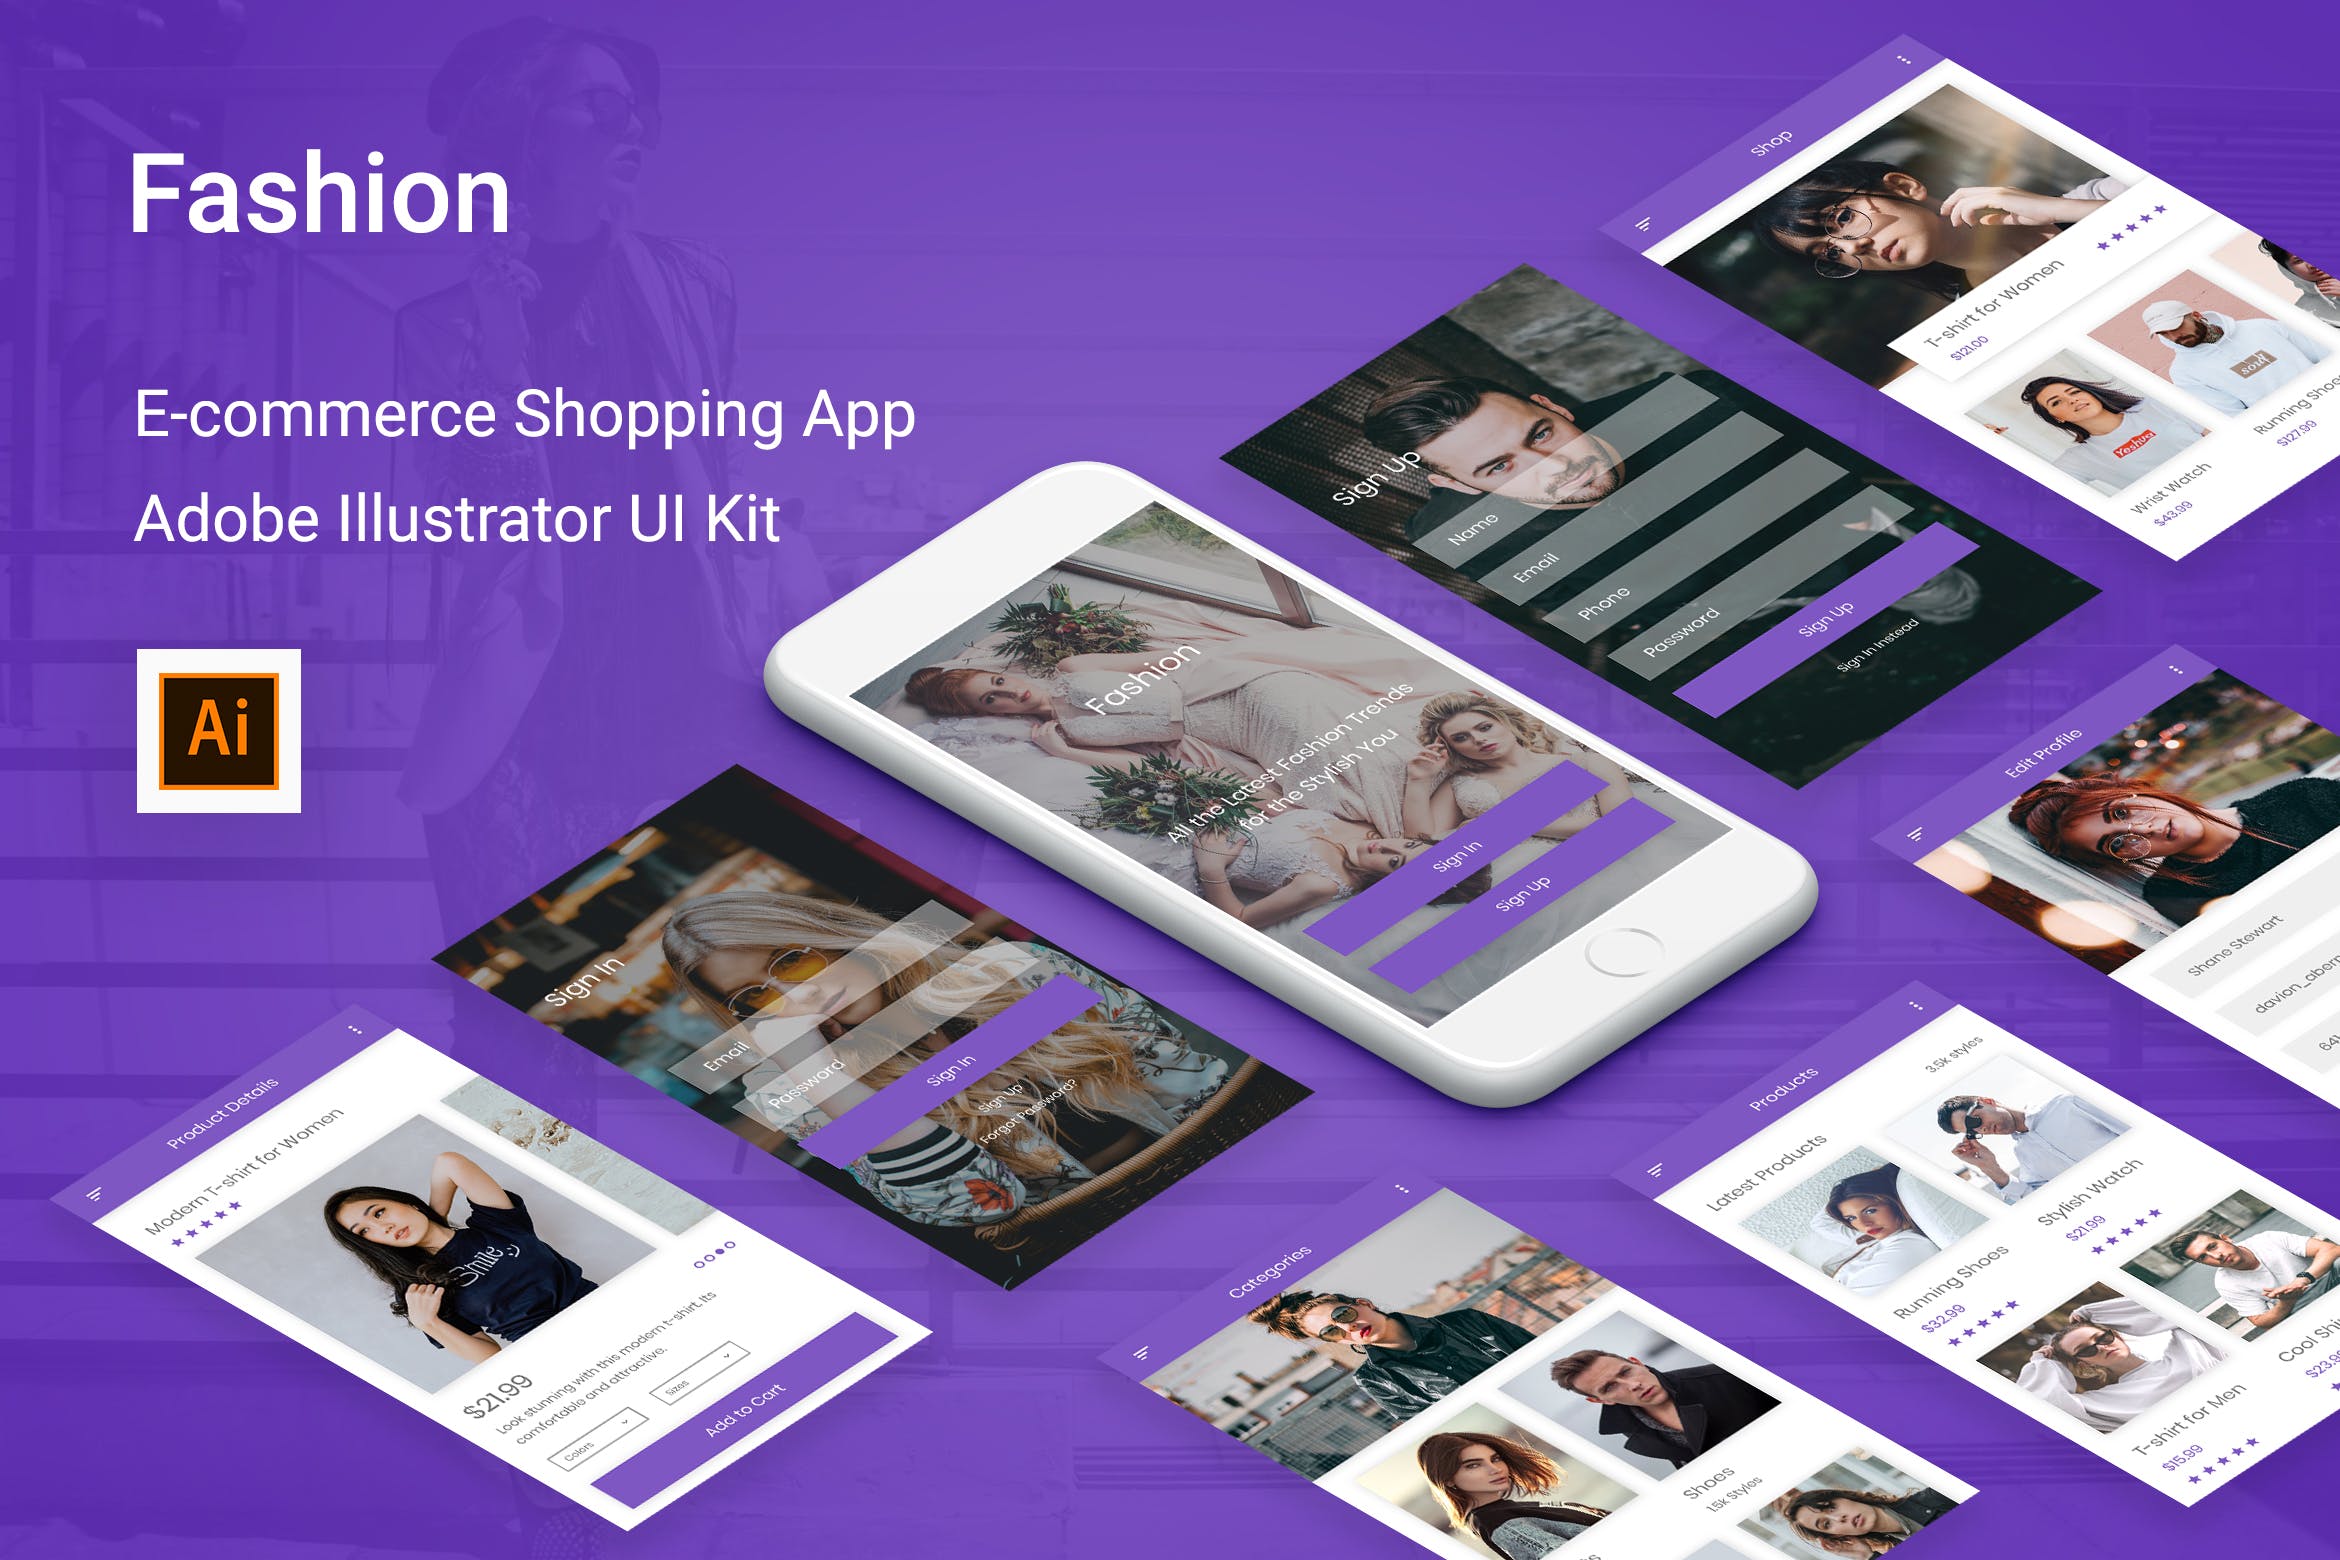 时尚服饰电商APP应用UI设计16图库精选套件 Fashion – Ecommerce Shopping App Adobe Illustrator插图